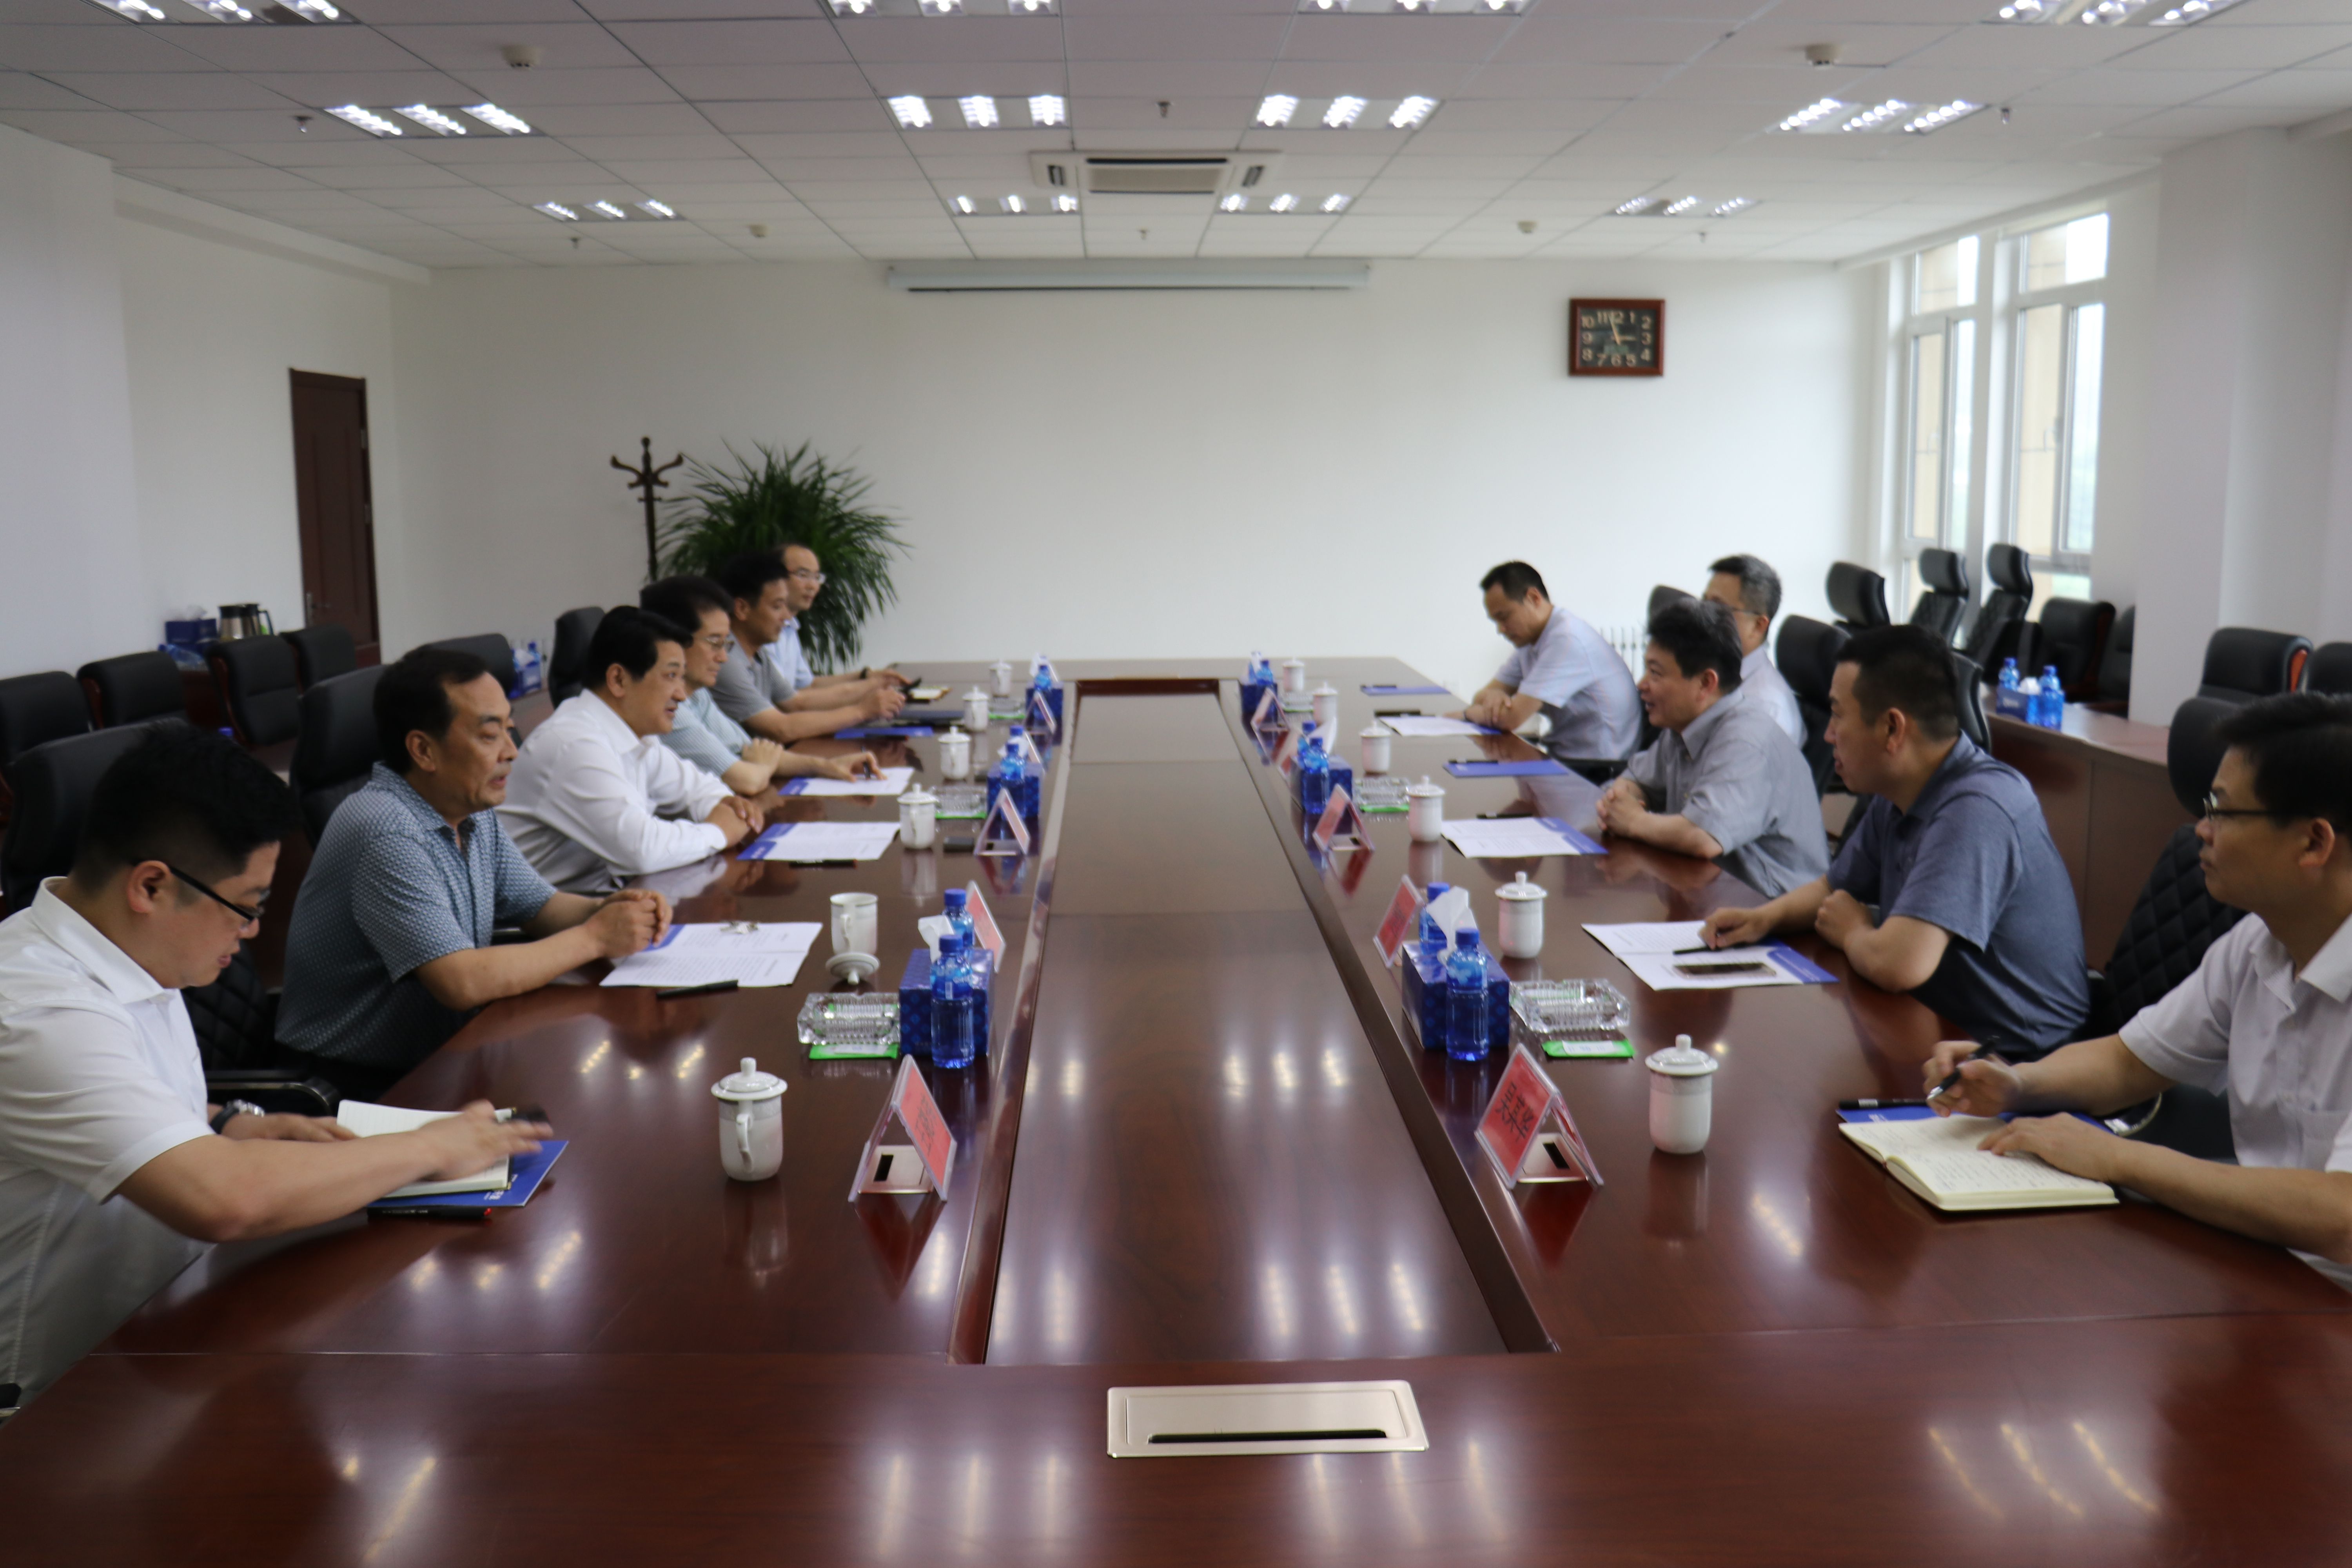 江苏省扬州市广陵区人民法院于2020年11月2日作出民事判决书